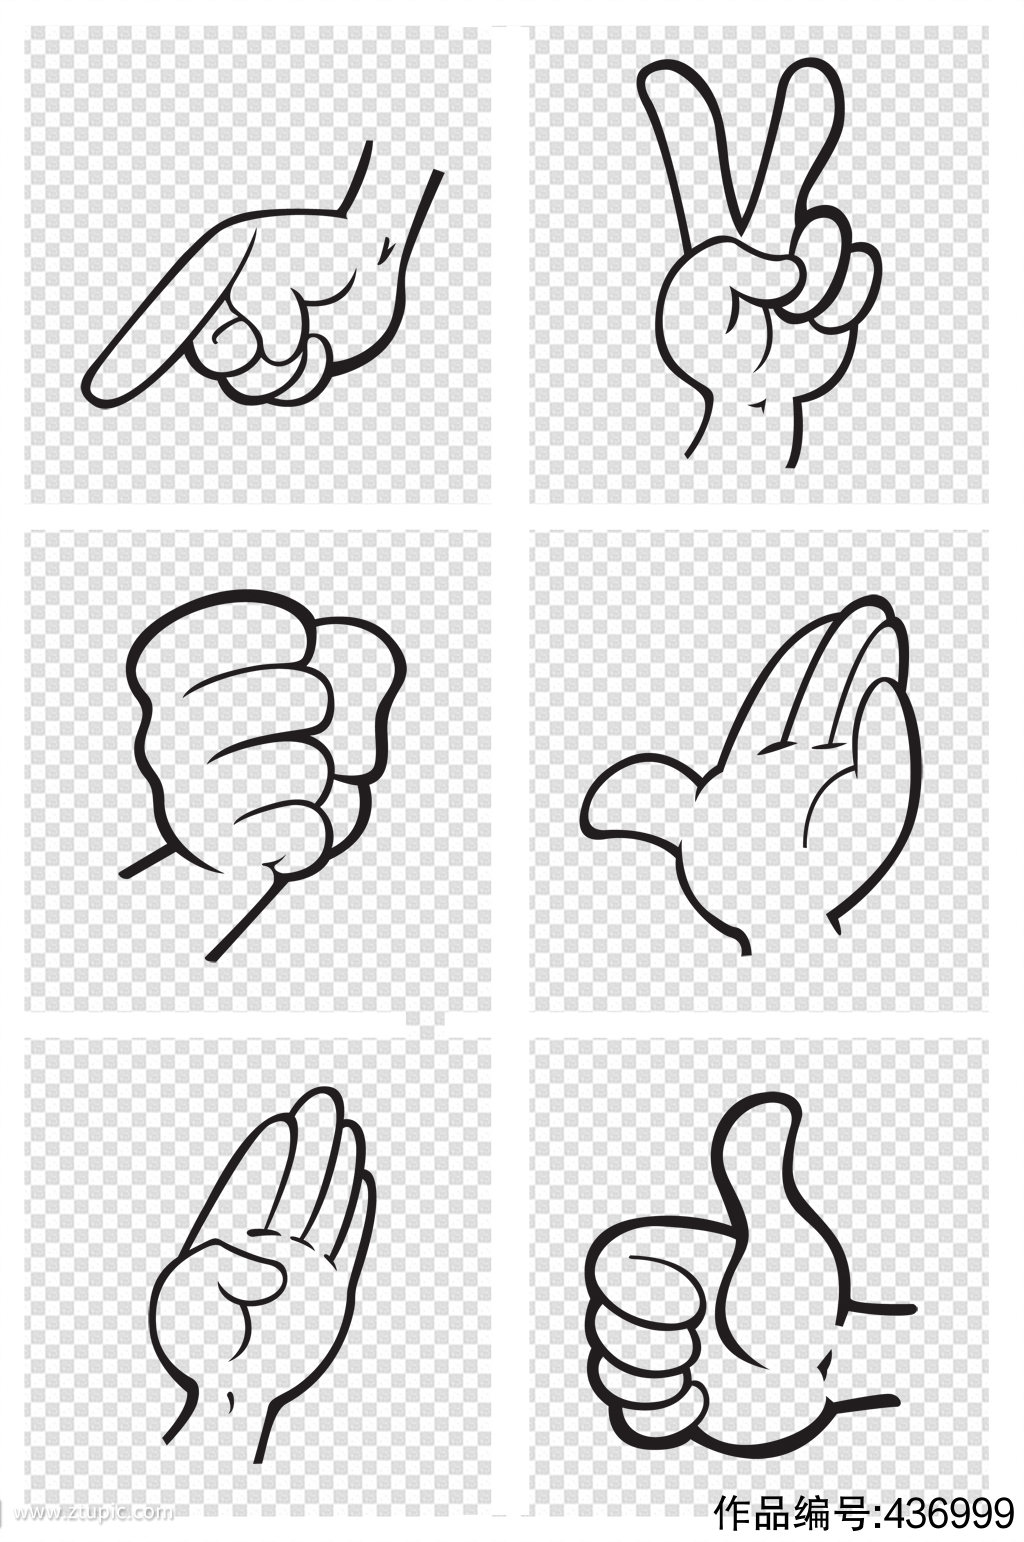 素描的拇指拇指朝下的手势矢量插画平面广告素材免费下载(图片编号:2162052)-六图网